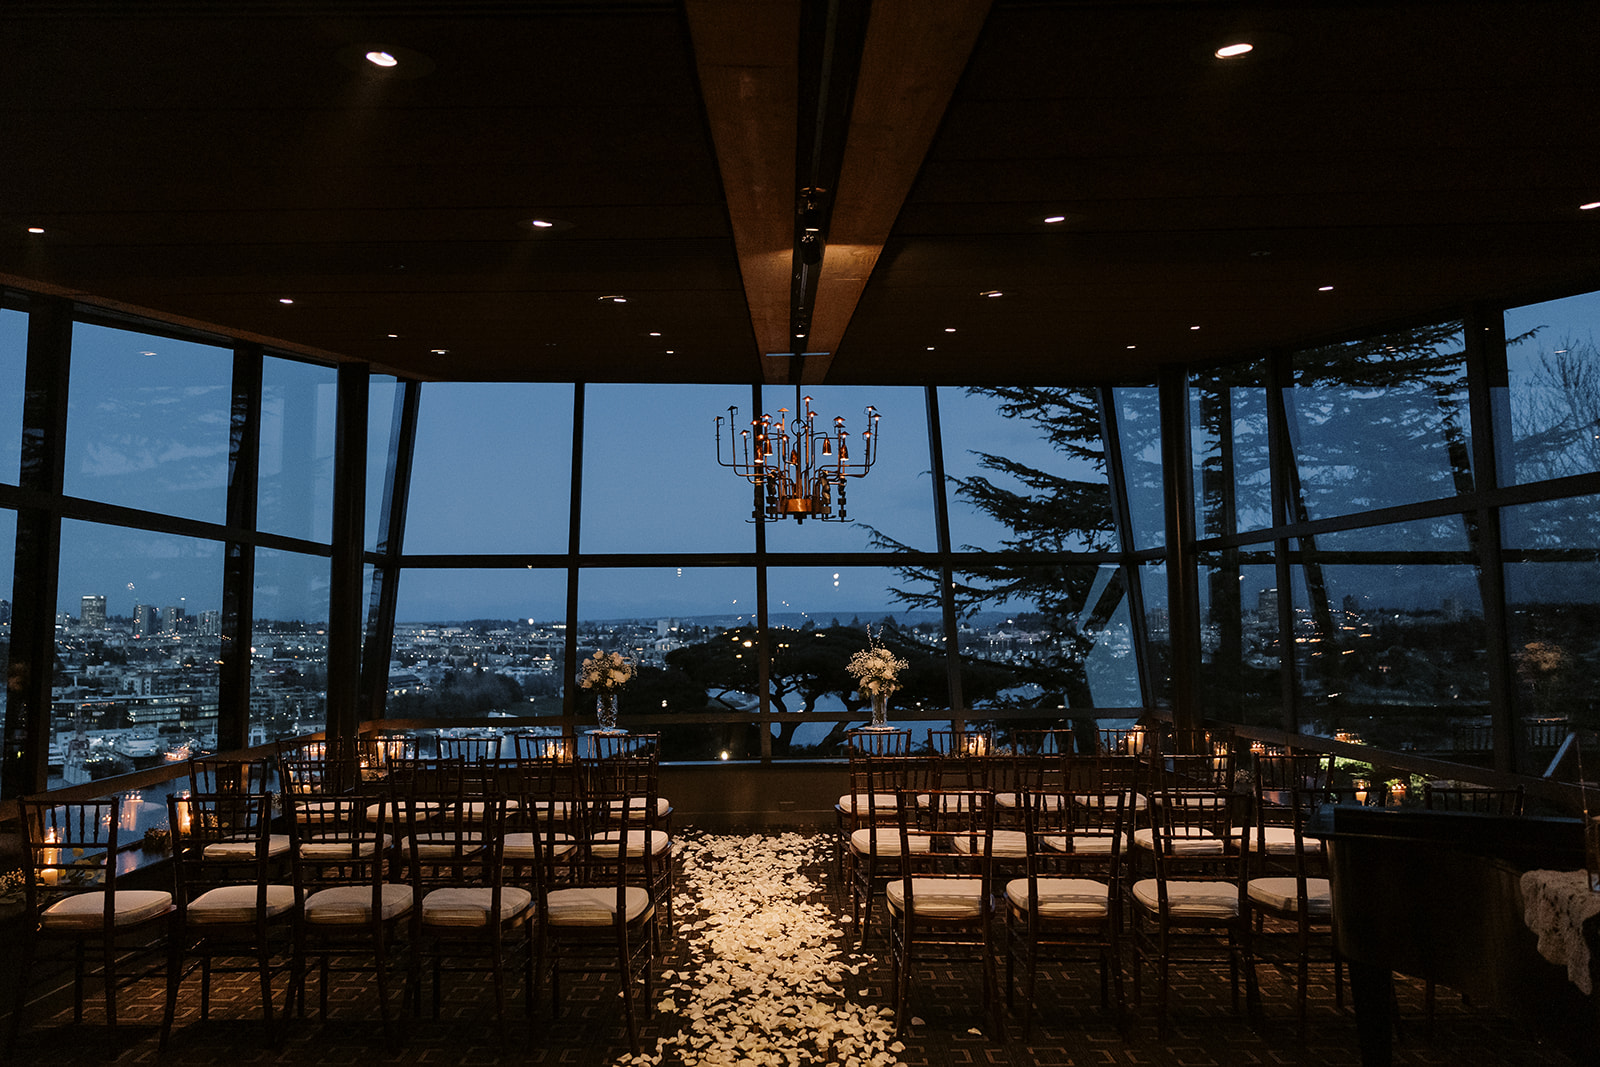 Canlis restaurant wedding ceremony setup